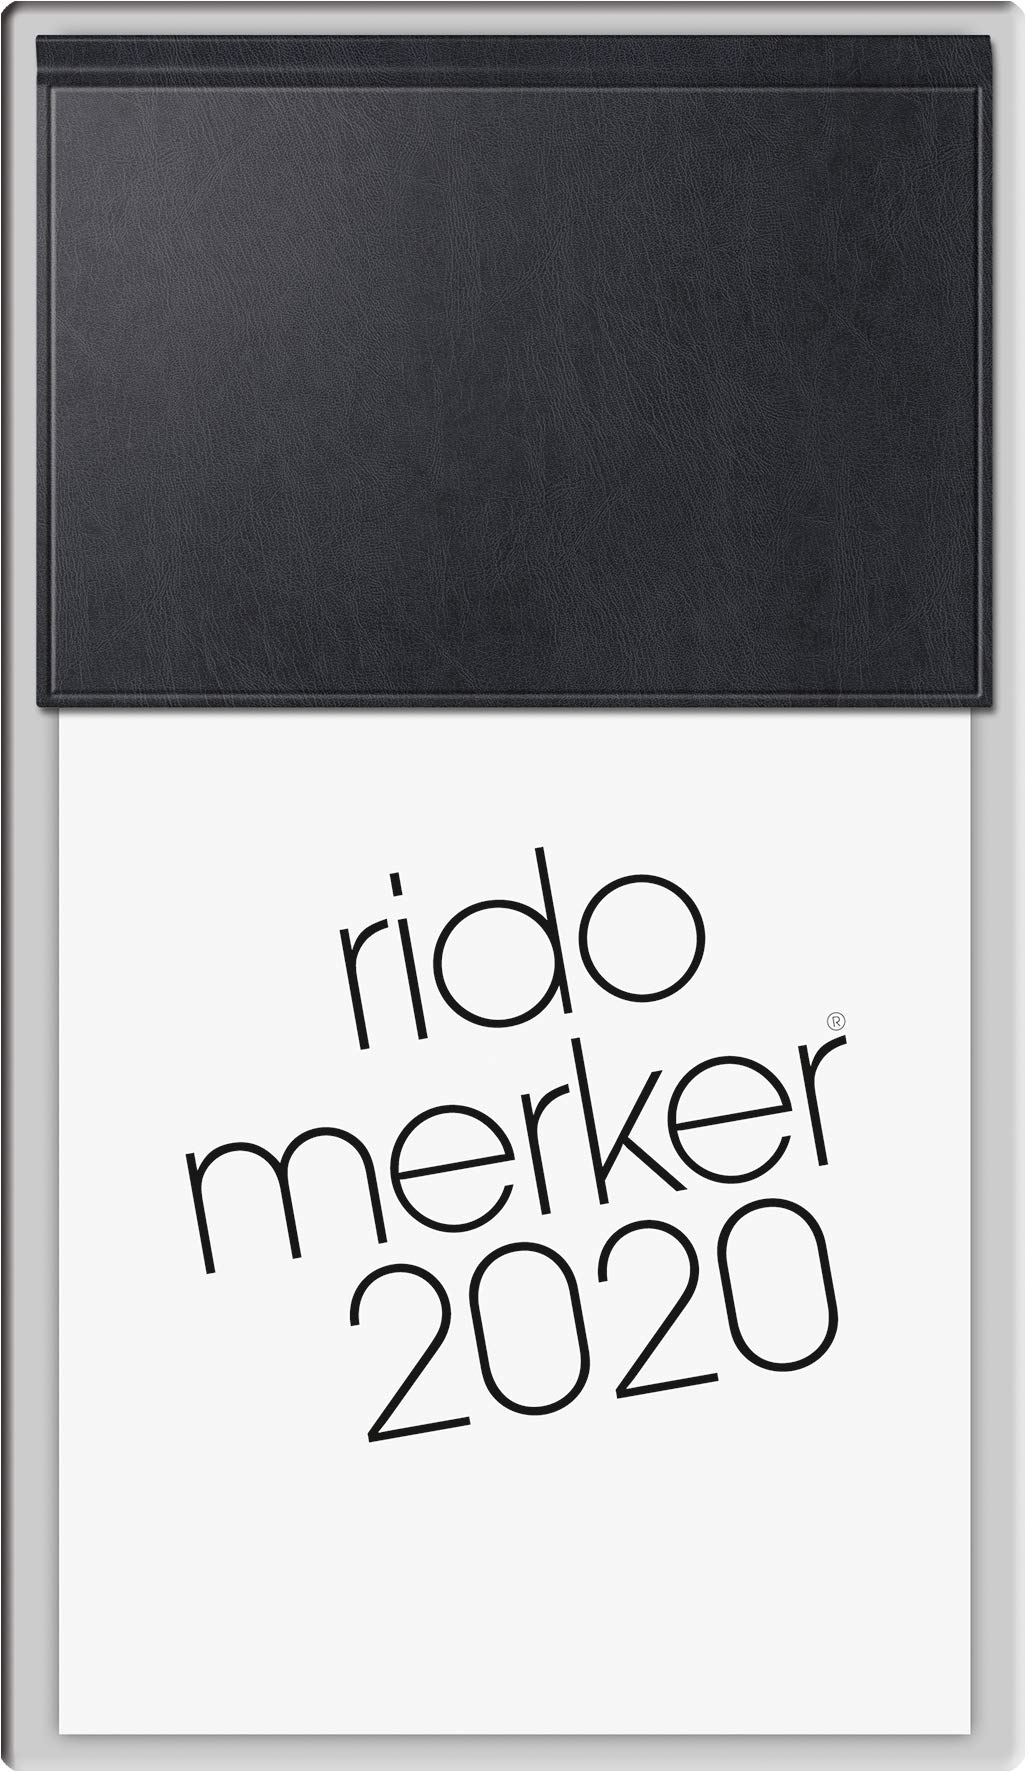 Baier & Schneider rido/idé 703500390 Tischkalender Merker (1 Seite = 1 Tag, 108 x 201 mm, Miradur-Einband, Kalendarium 2020) schwarz